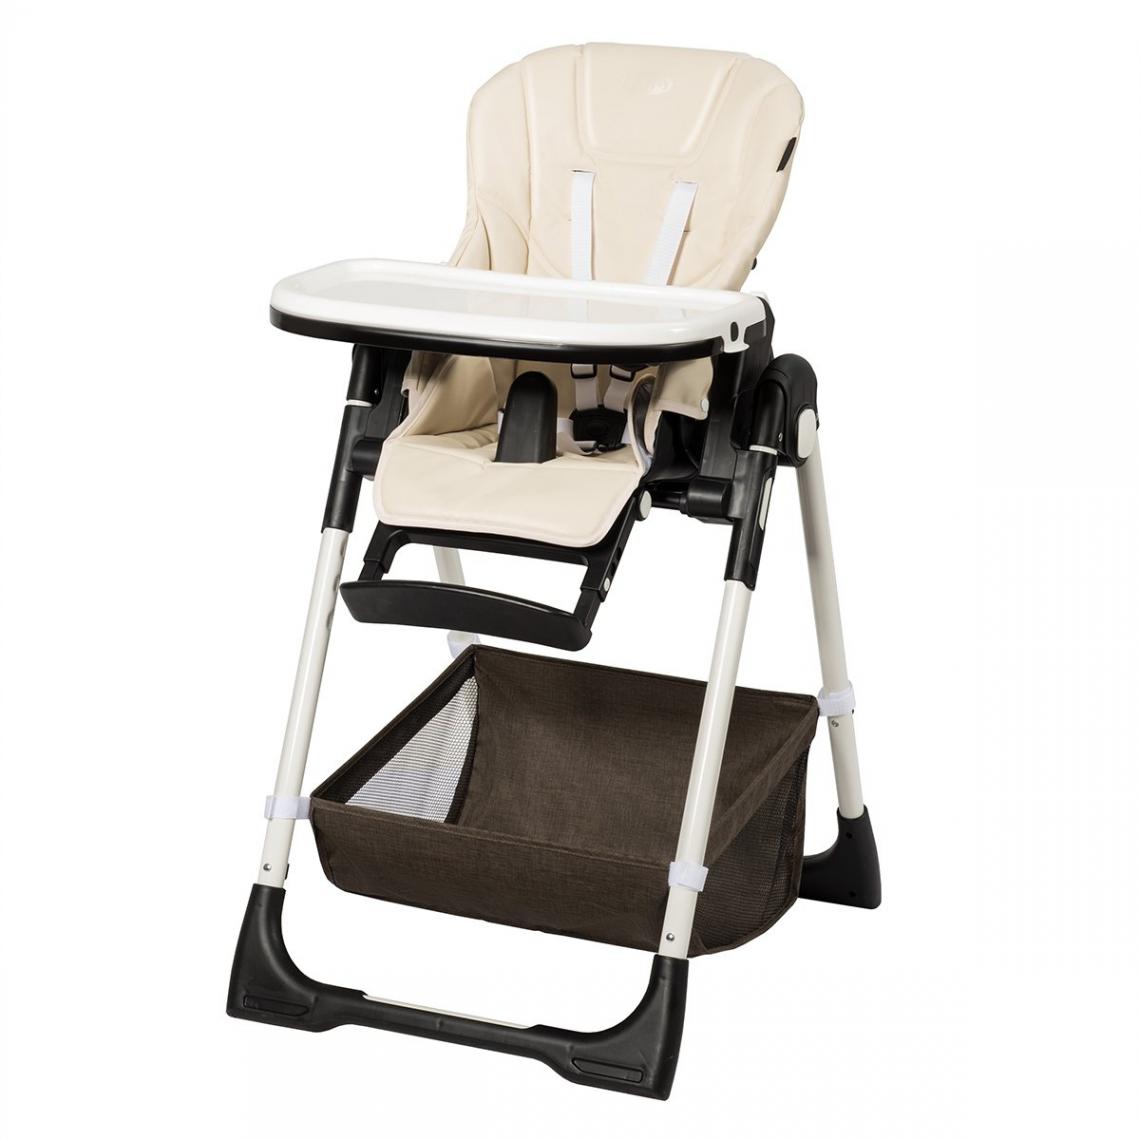 Decoshop26 - Chaise haute bébé pliable pour 0-5ans charge 15kg 6 réglages en hauteur beige 20_0000403 - Chaises